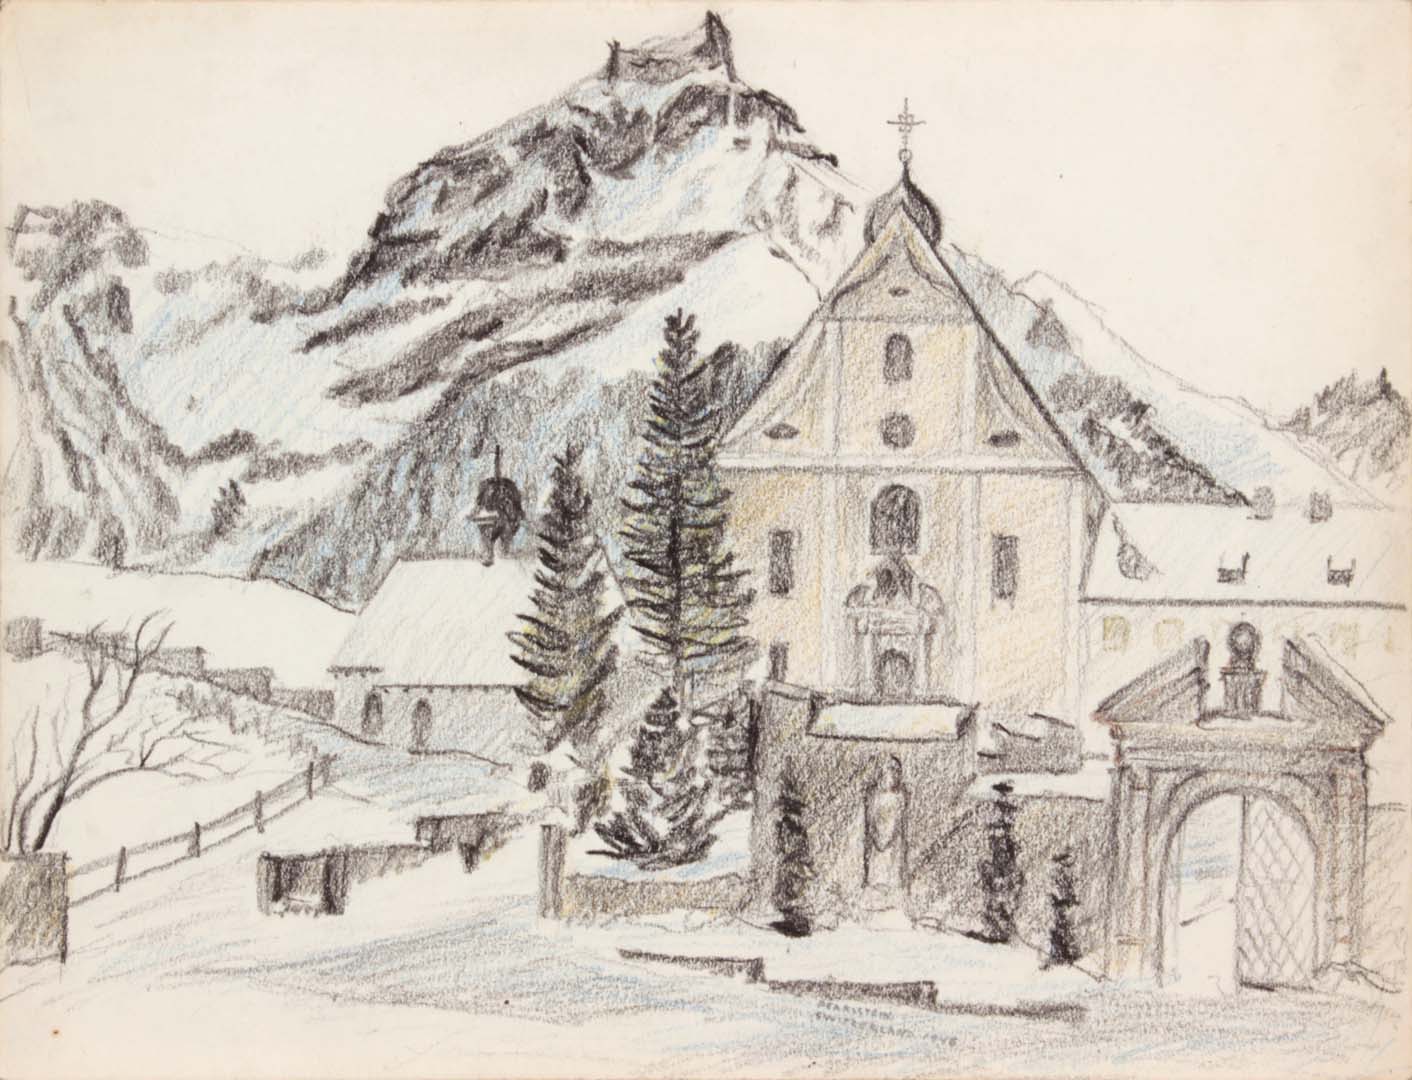 1946 Alpine Village (Switzerland) Conte Crayon 9 x 11.875